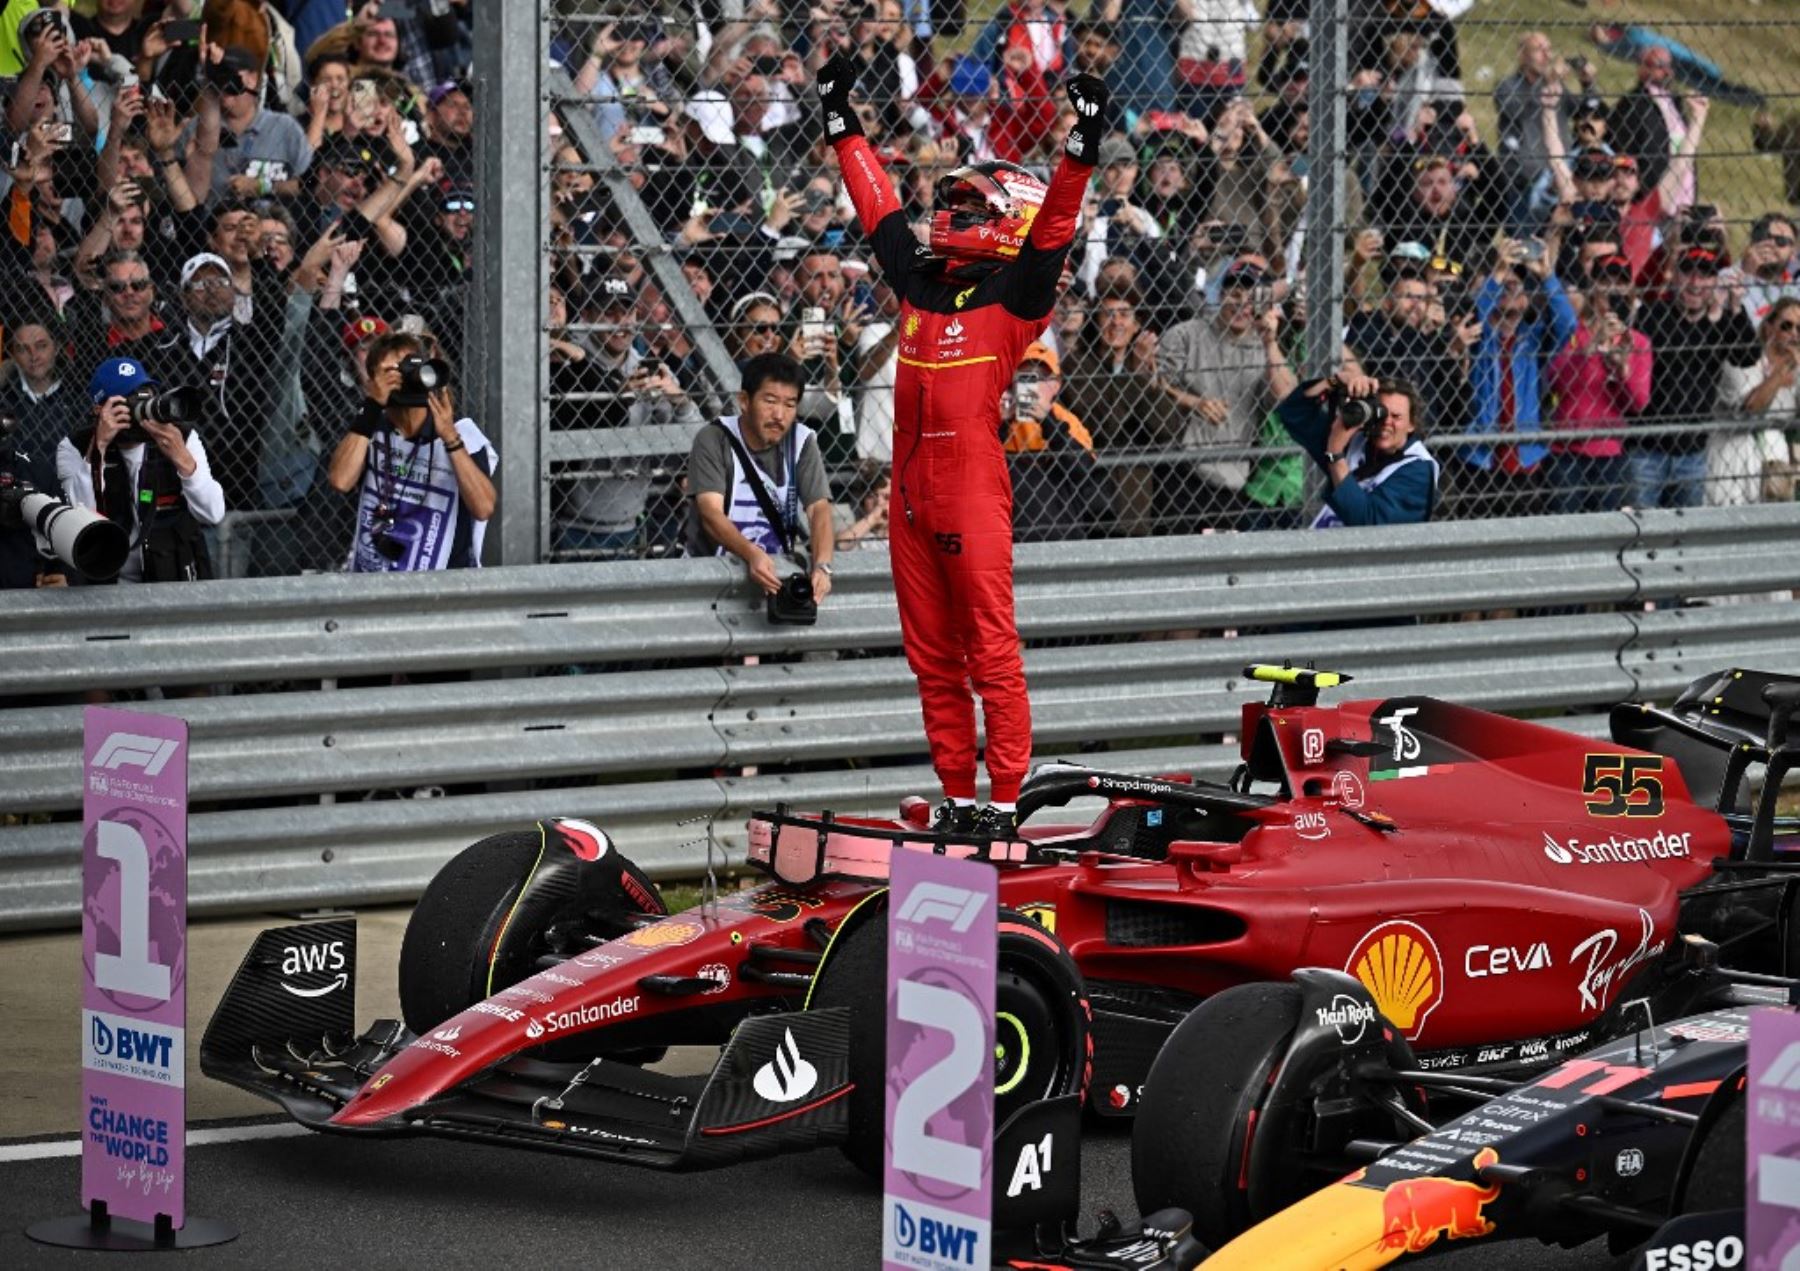 Carlos Sainz (Ferrari) ganó el Gran Premio de Gran Bretaña, el décimo del Mundial de Fórmula Uno, que se disputó en el circuito de Silverstone